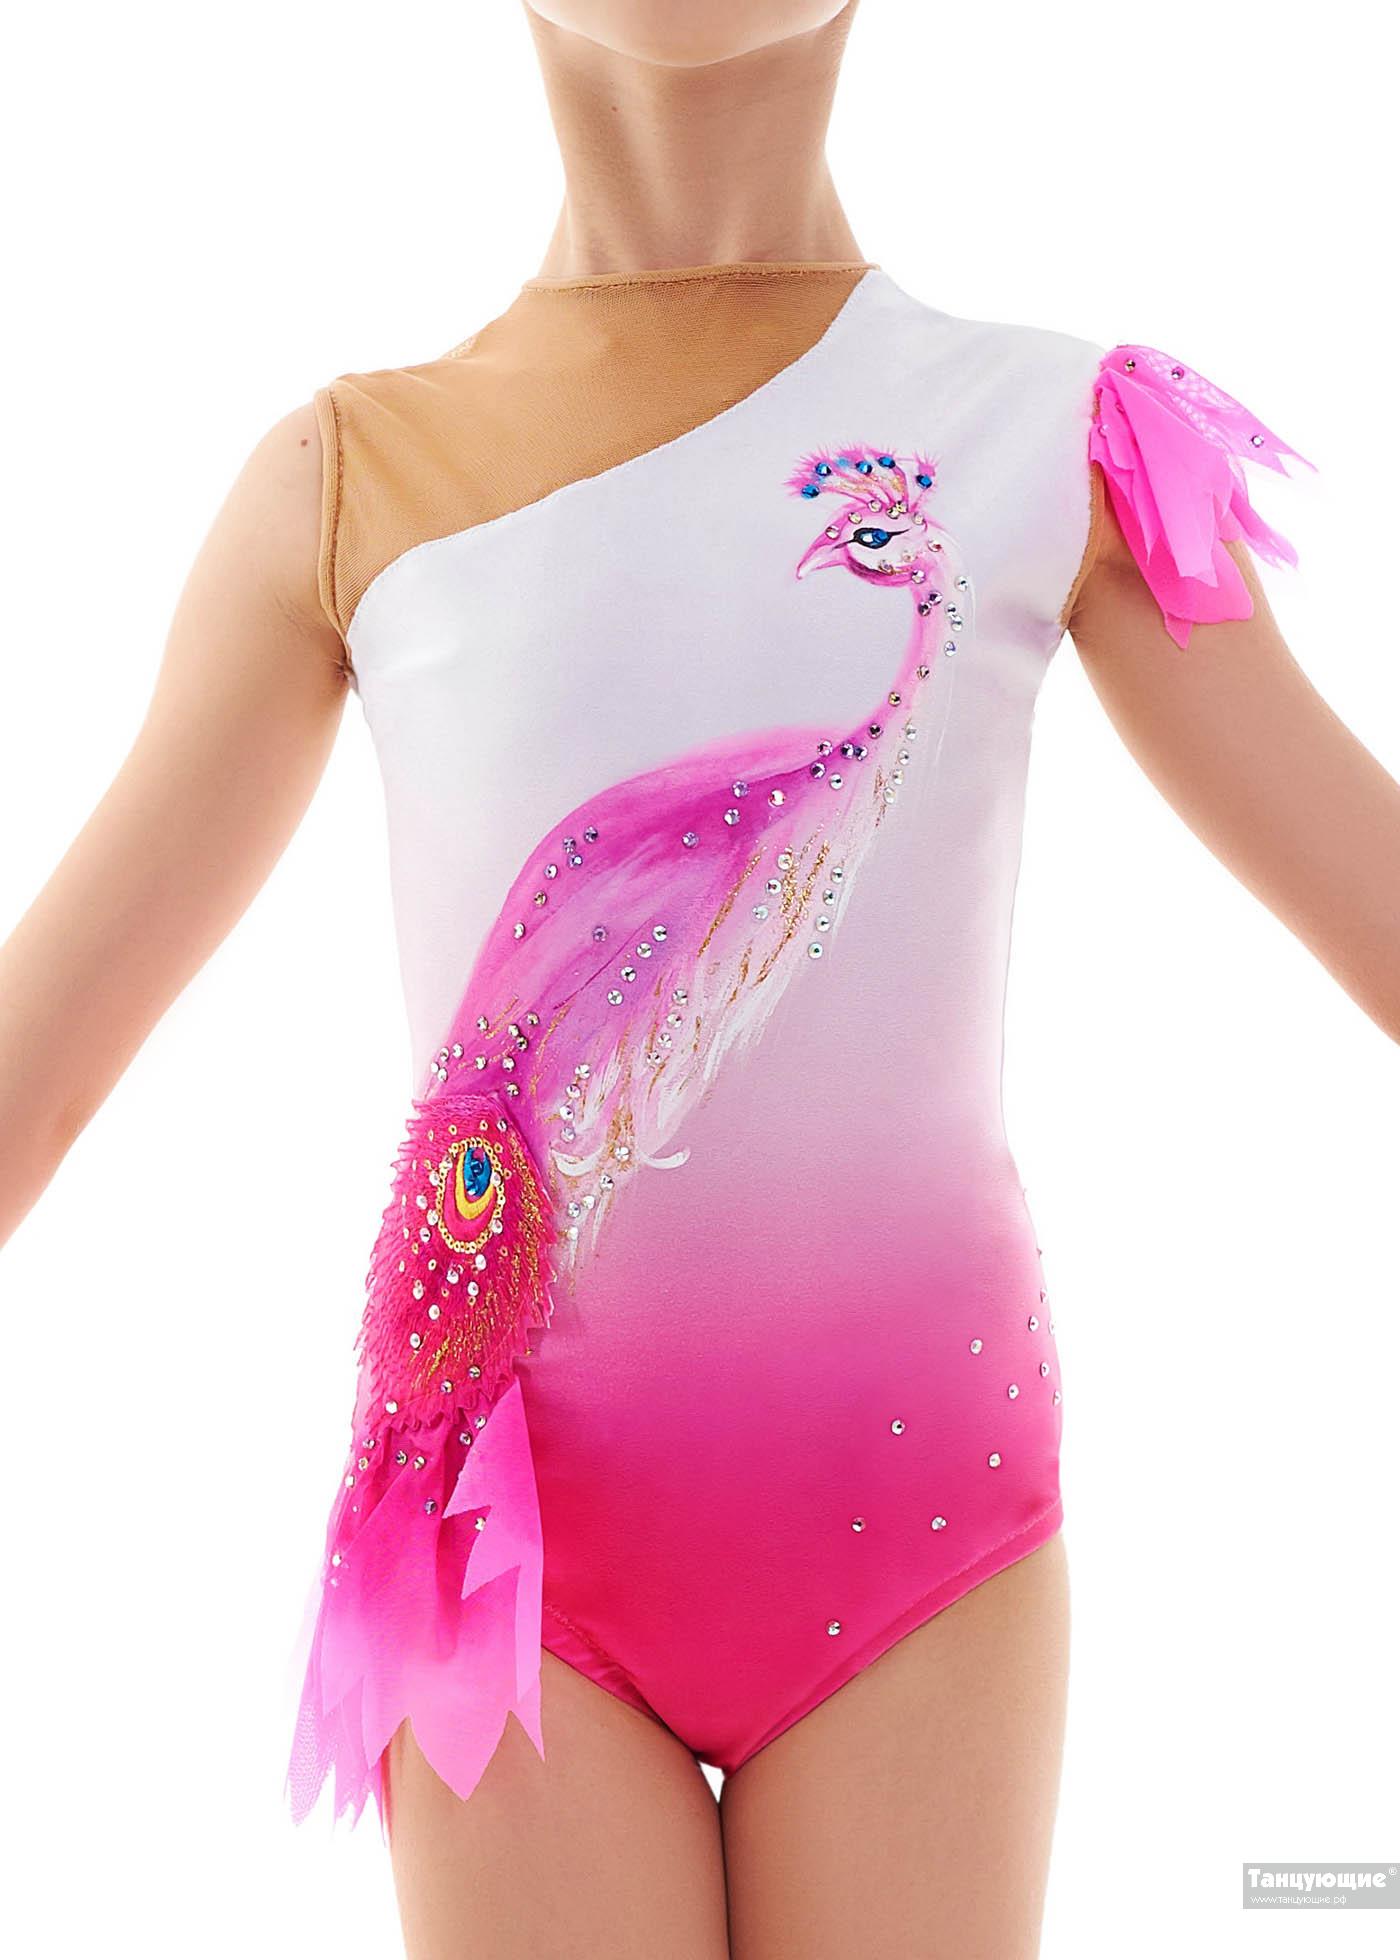 Купальник для художественной гимнастики Дарси — купить в интернет-магазине «Танцующие»